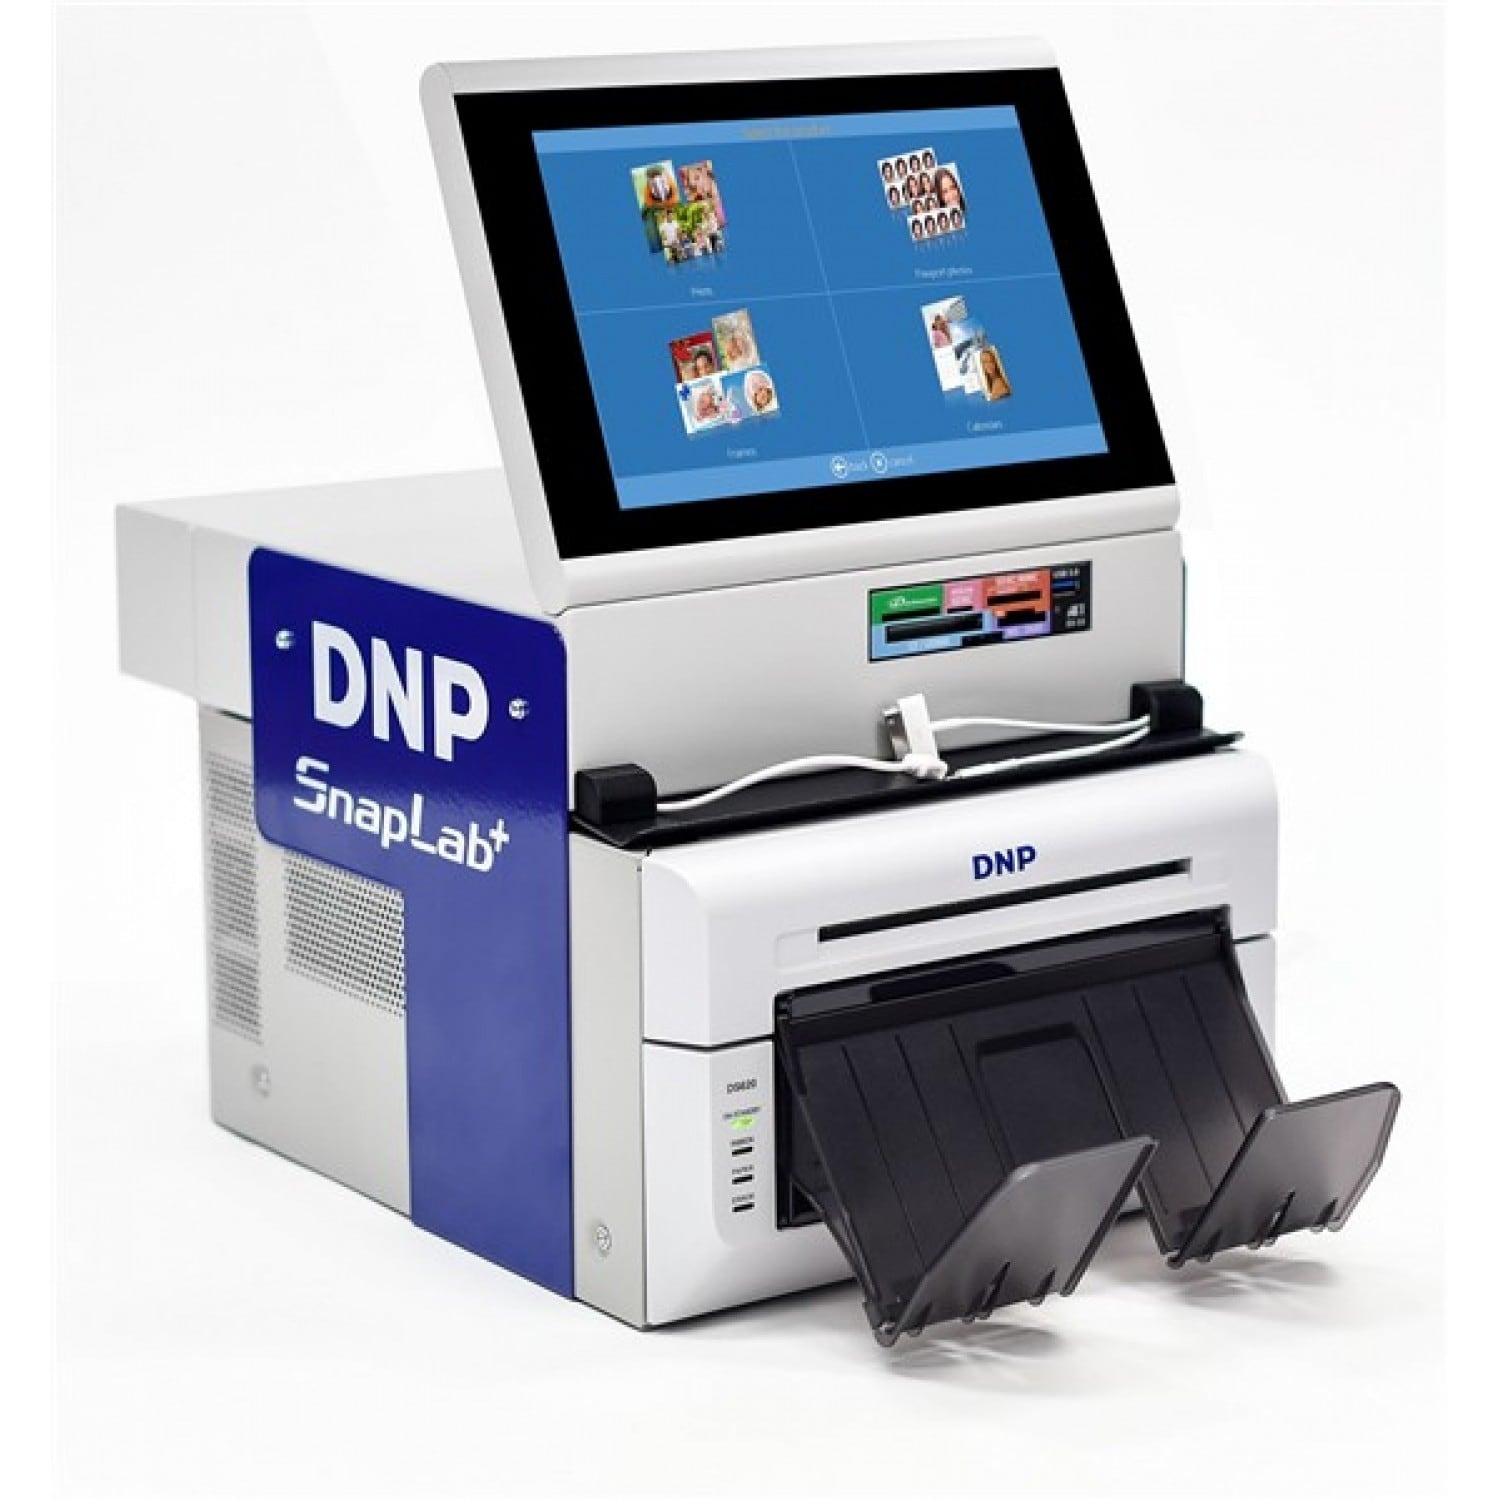 Kiosk photo identité DNP thermique ID+ : imprimante ID600 & tablette  tactile avec appareil photo intégré